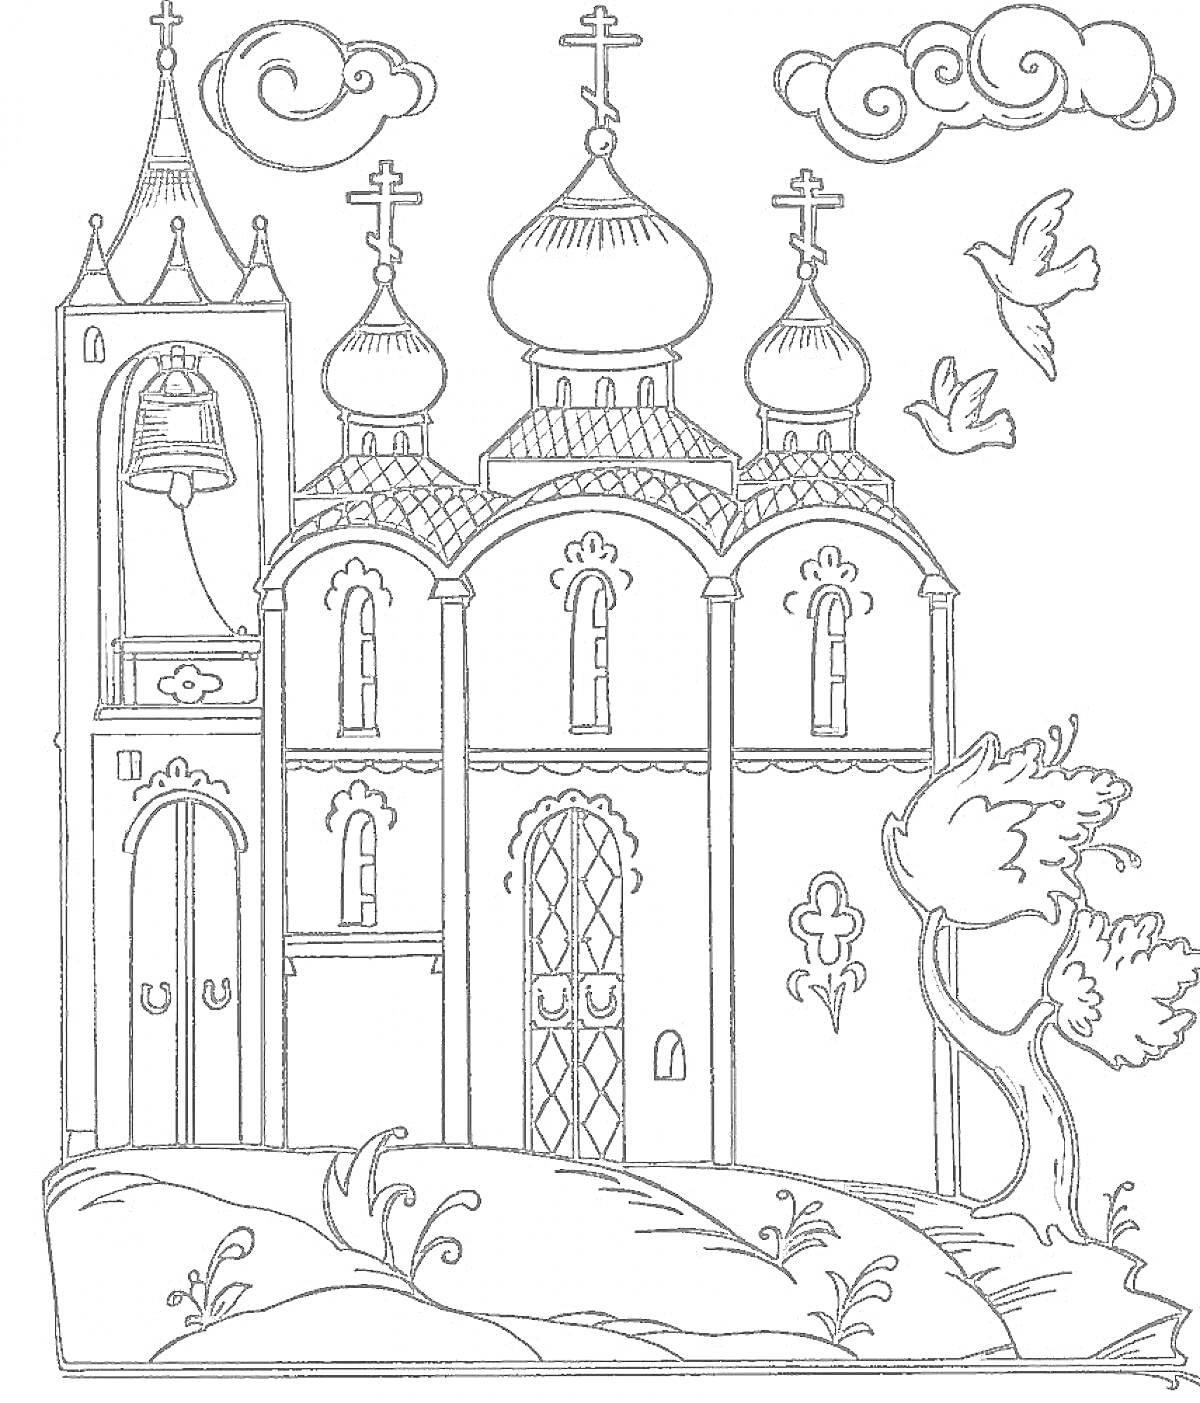 Раскраска Церковь с колокольней, куполами, облаками, птицами и деревом